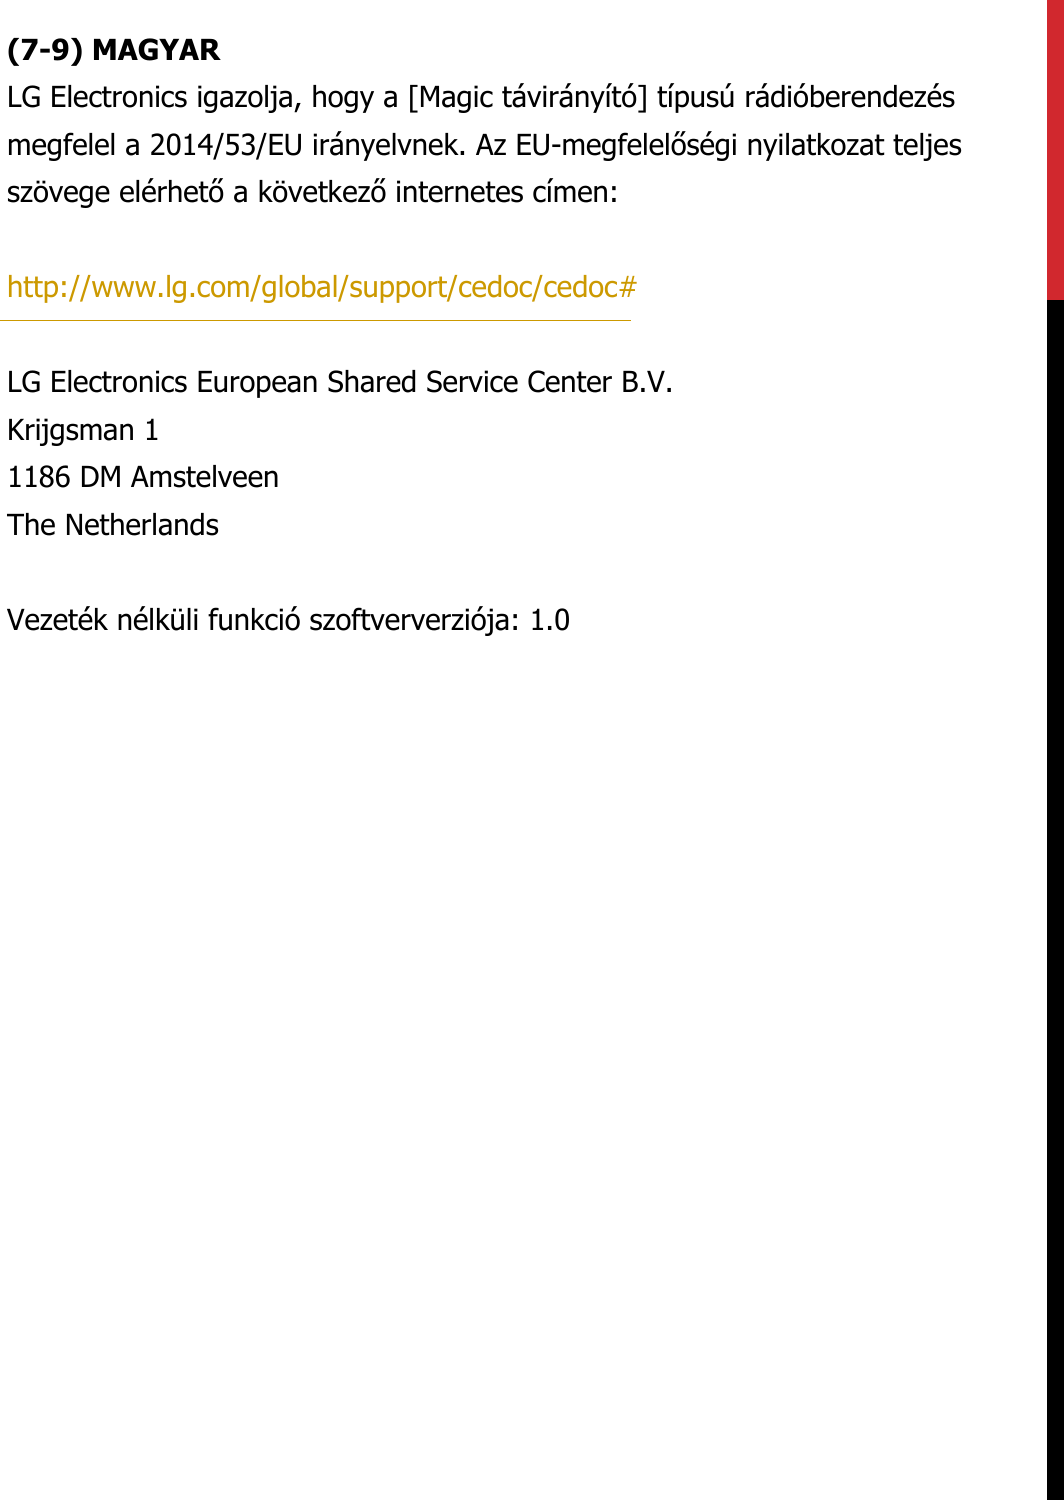 (7-9) MAGYARLG Electronics igazolja, hogy a [Magic távirányító] típusú rádióberendezés megfelel a 2014/53/EU irányelvnek. Az EU-megfelelőségi nyilatkozat teljes szövege elérhető a következő internetes címen:   http://www.lg.com/global/support/cedoc/cedoc#   LG Electronics European Shared Service Center B.V.  Krijgsman 1  1186 DM Amstelveen  The Netherlands   Vezeték nélküli funkció szoftververziója: 1.0